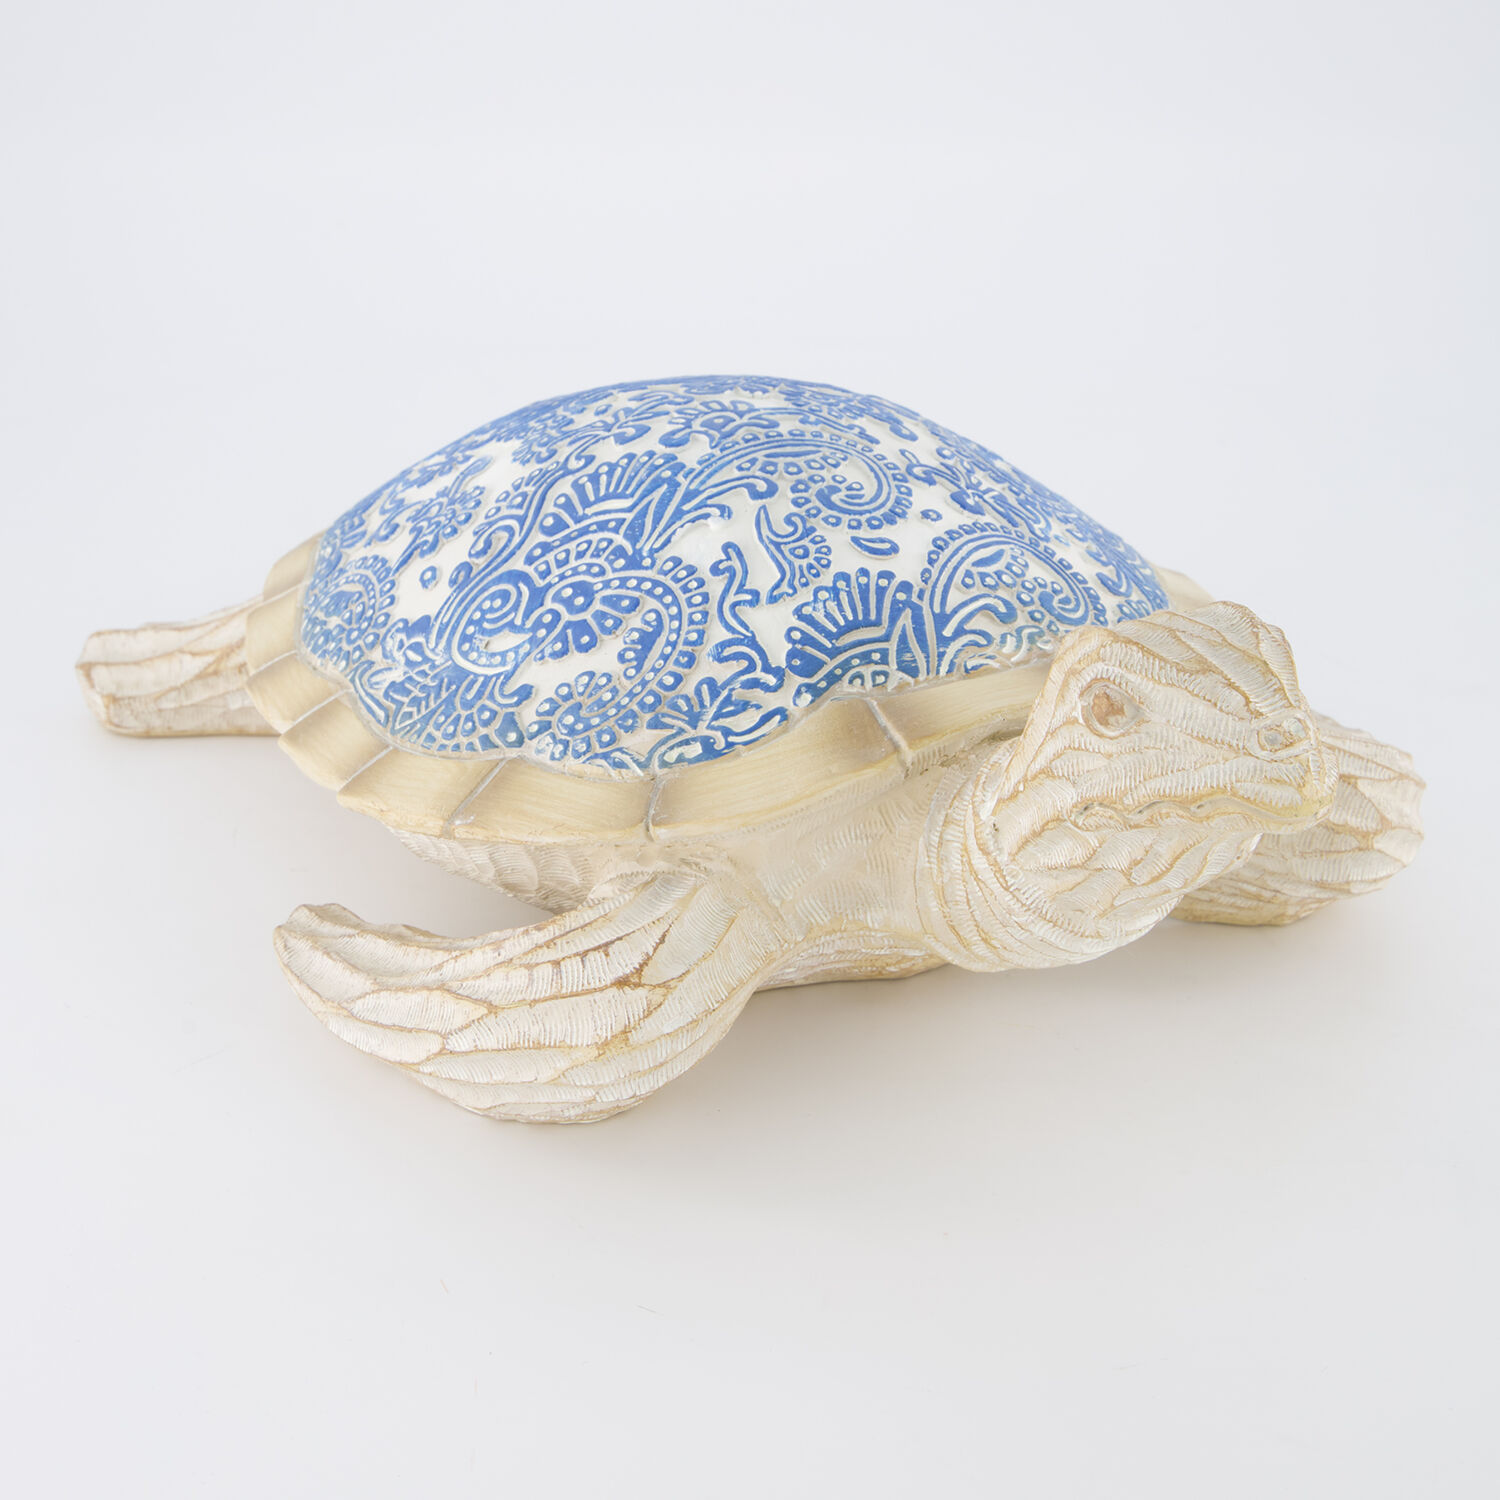 Декоративная фигурка сине-бежевого цвета в виде морской черепахи 12х37см Galt International